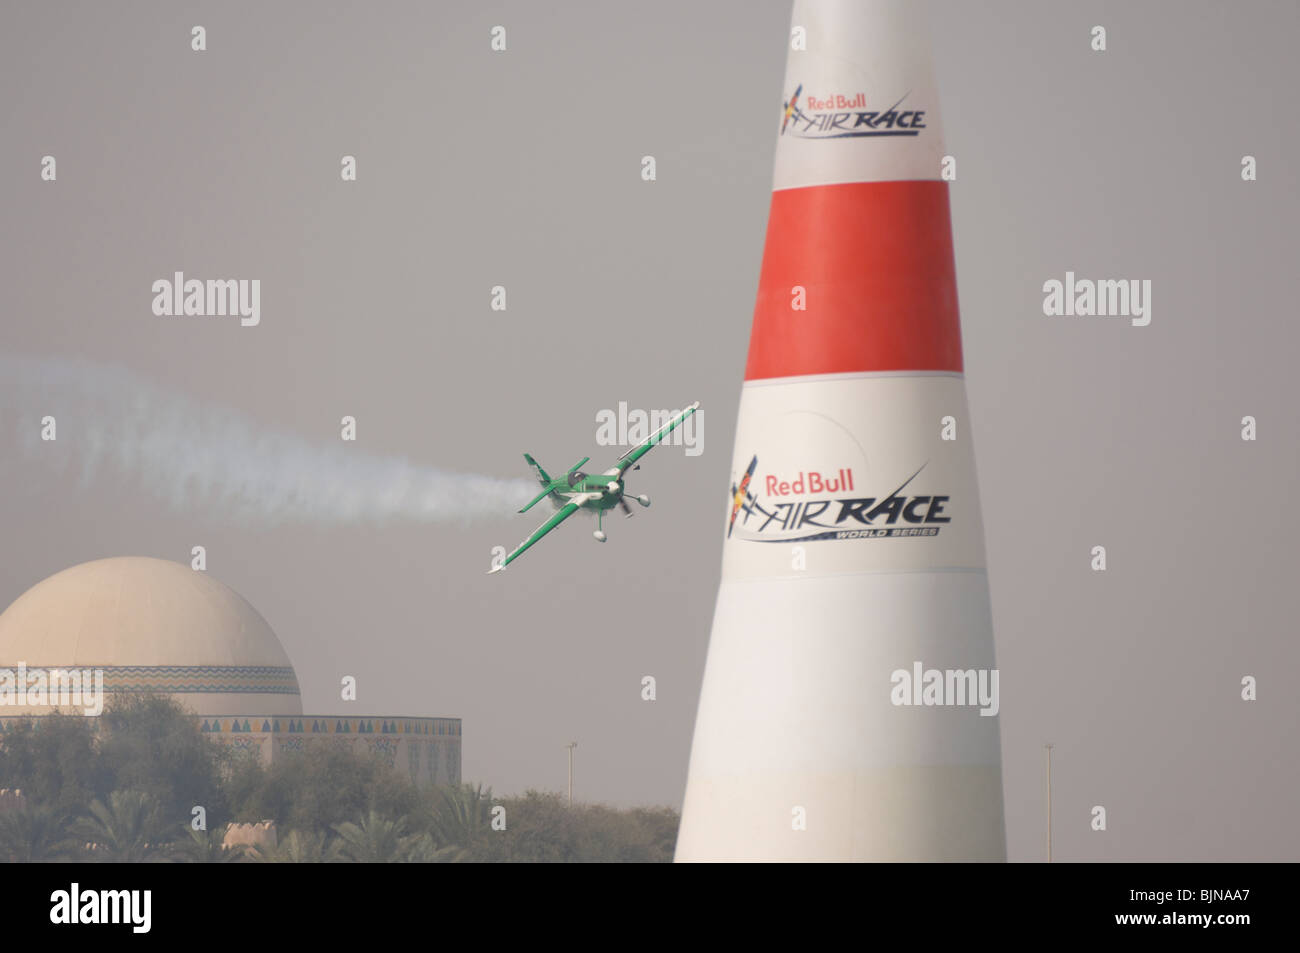 27.03.2010. Abu Dabi. Red Bull Air Race. Flugzeug fliegt zwischen Marker leuchten während des Rennens. Stockfoto